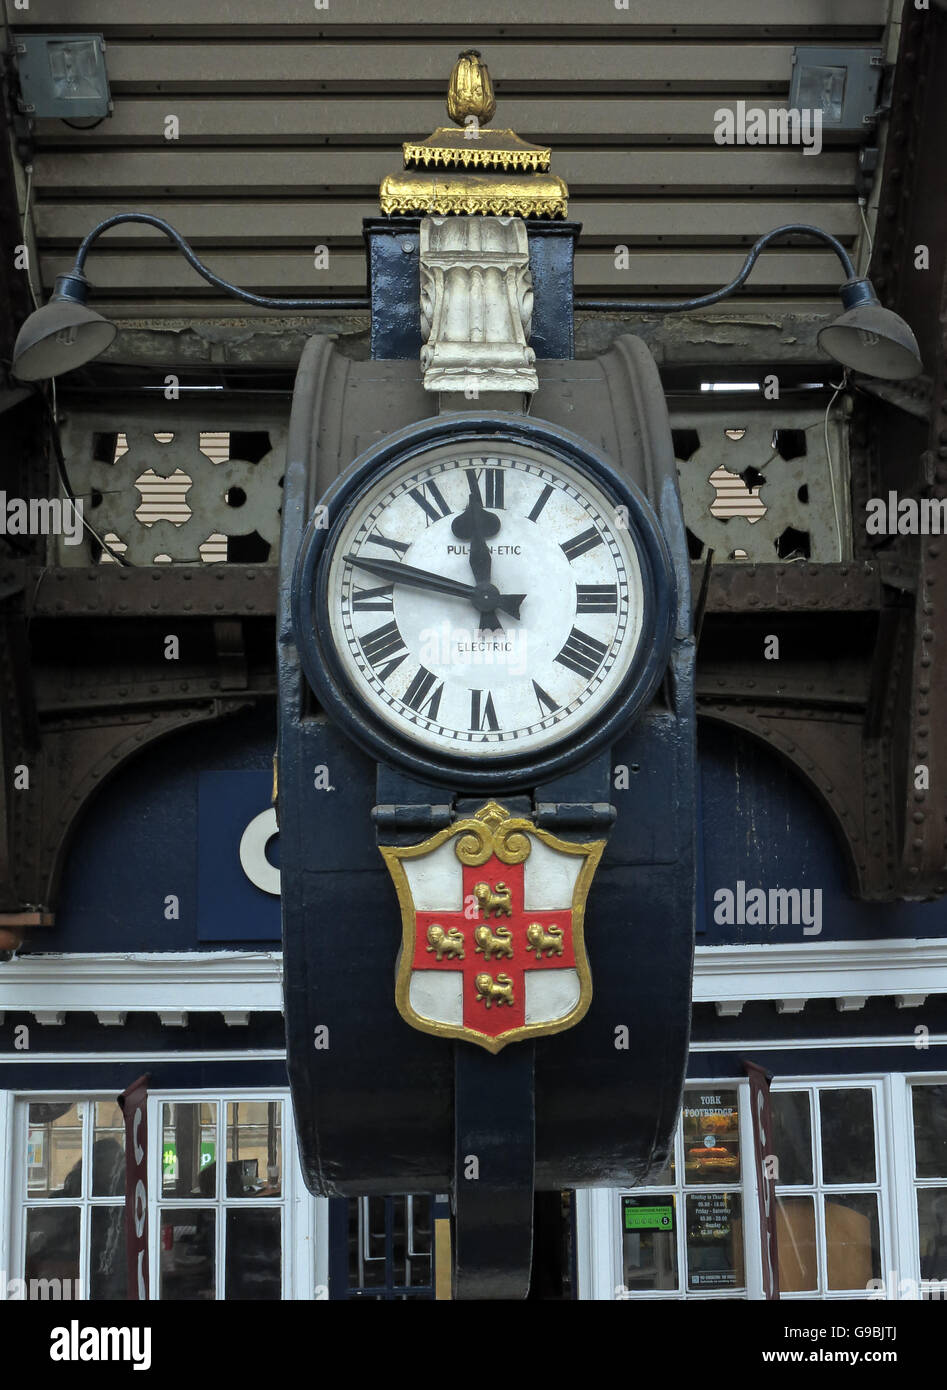 Vintage horloge électrique,la gare de York, Yorkshire, Angleterre, Royaume-Uni Banque D'Images